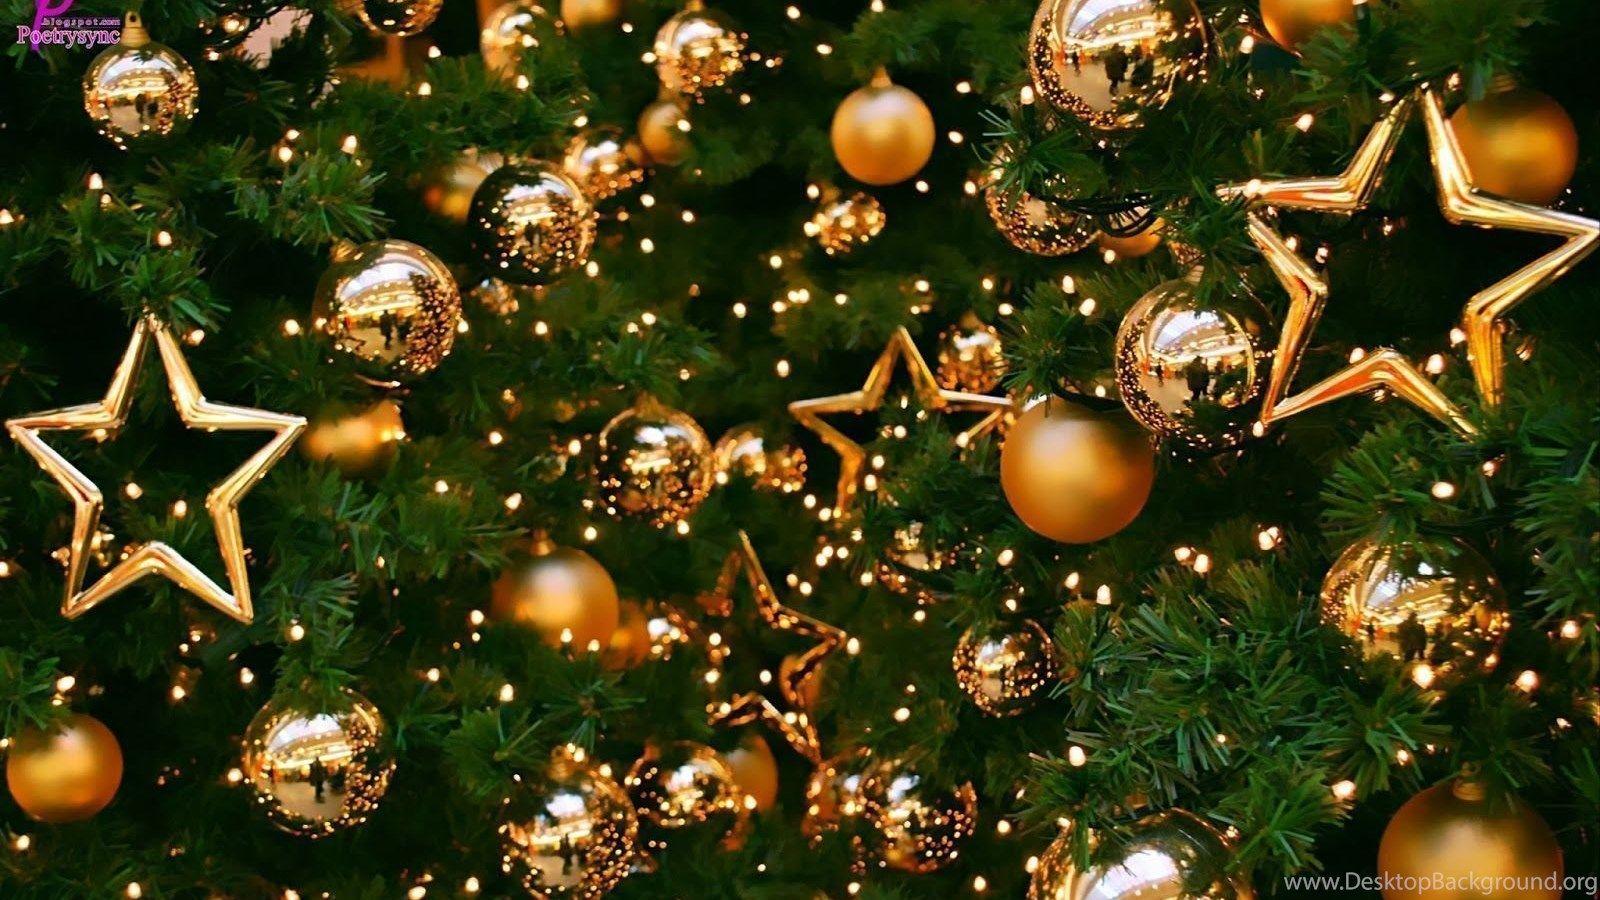 Merry Christmas Balls and Christmas Tree HD Wallpaper Image